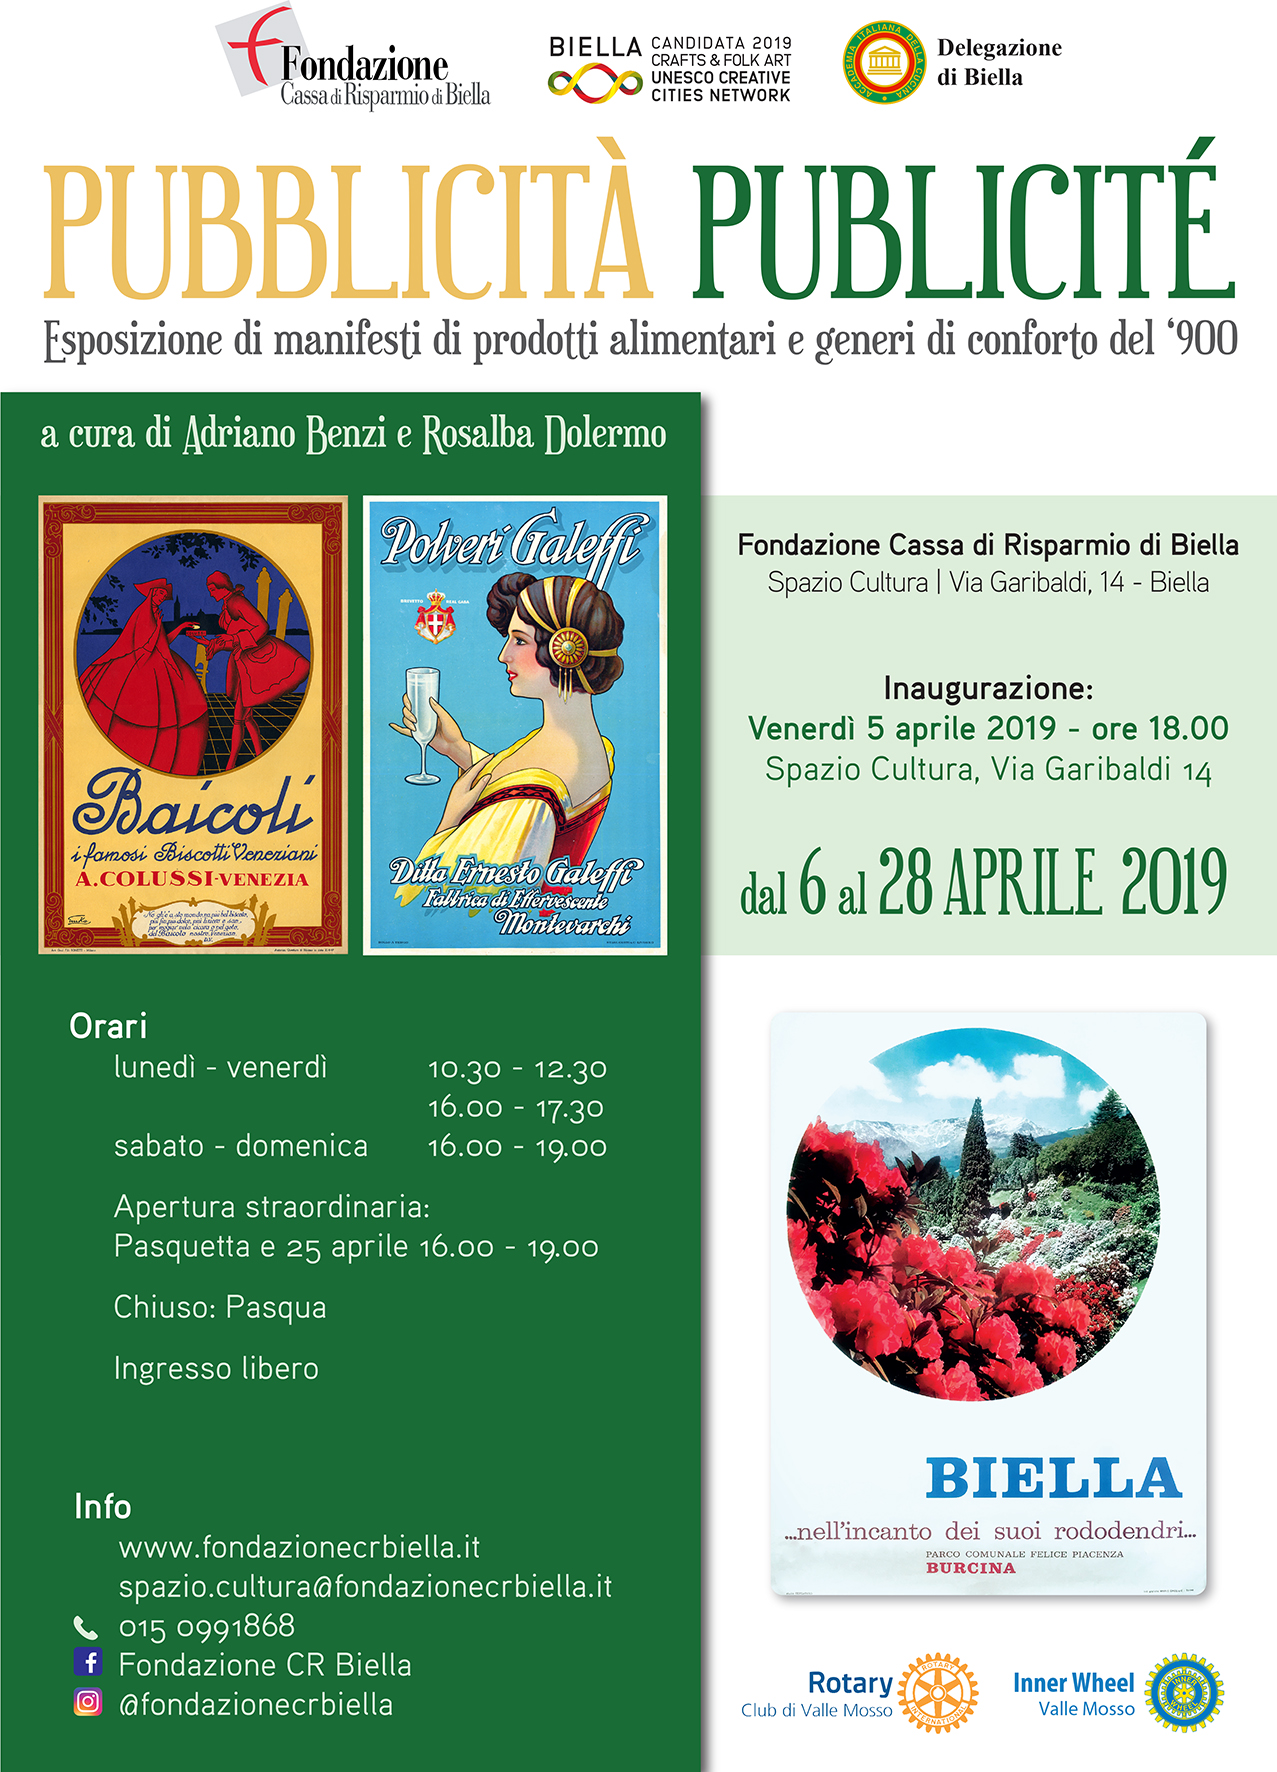 PUBBLICITA' PUBLICITE' 2019 - BIELLA 